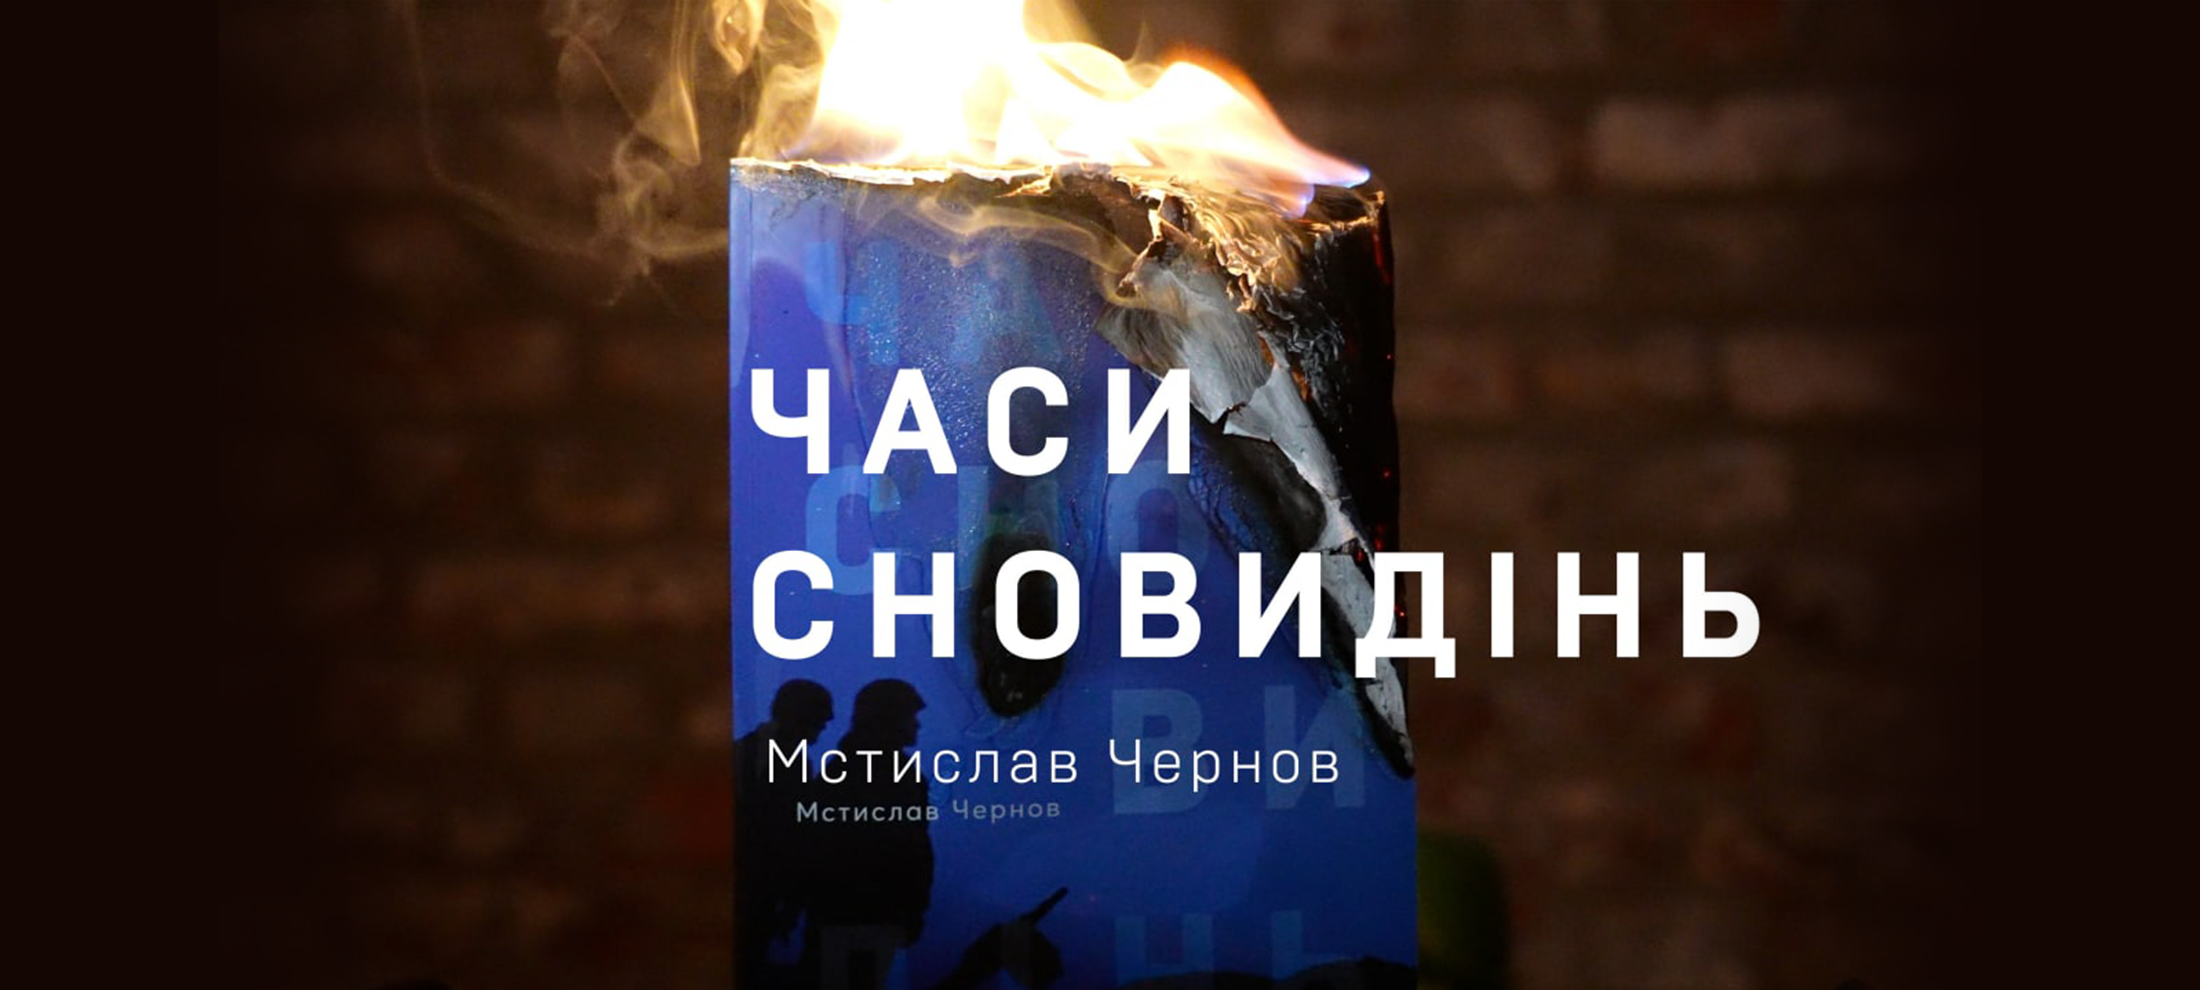 Мстислав Чернов: «Часи сновидінь» – психологічний роман-загадка, яку читач повинен розгадати сам» 0